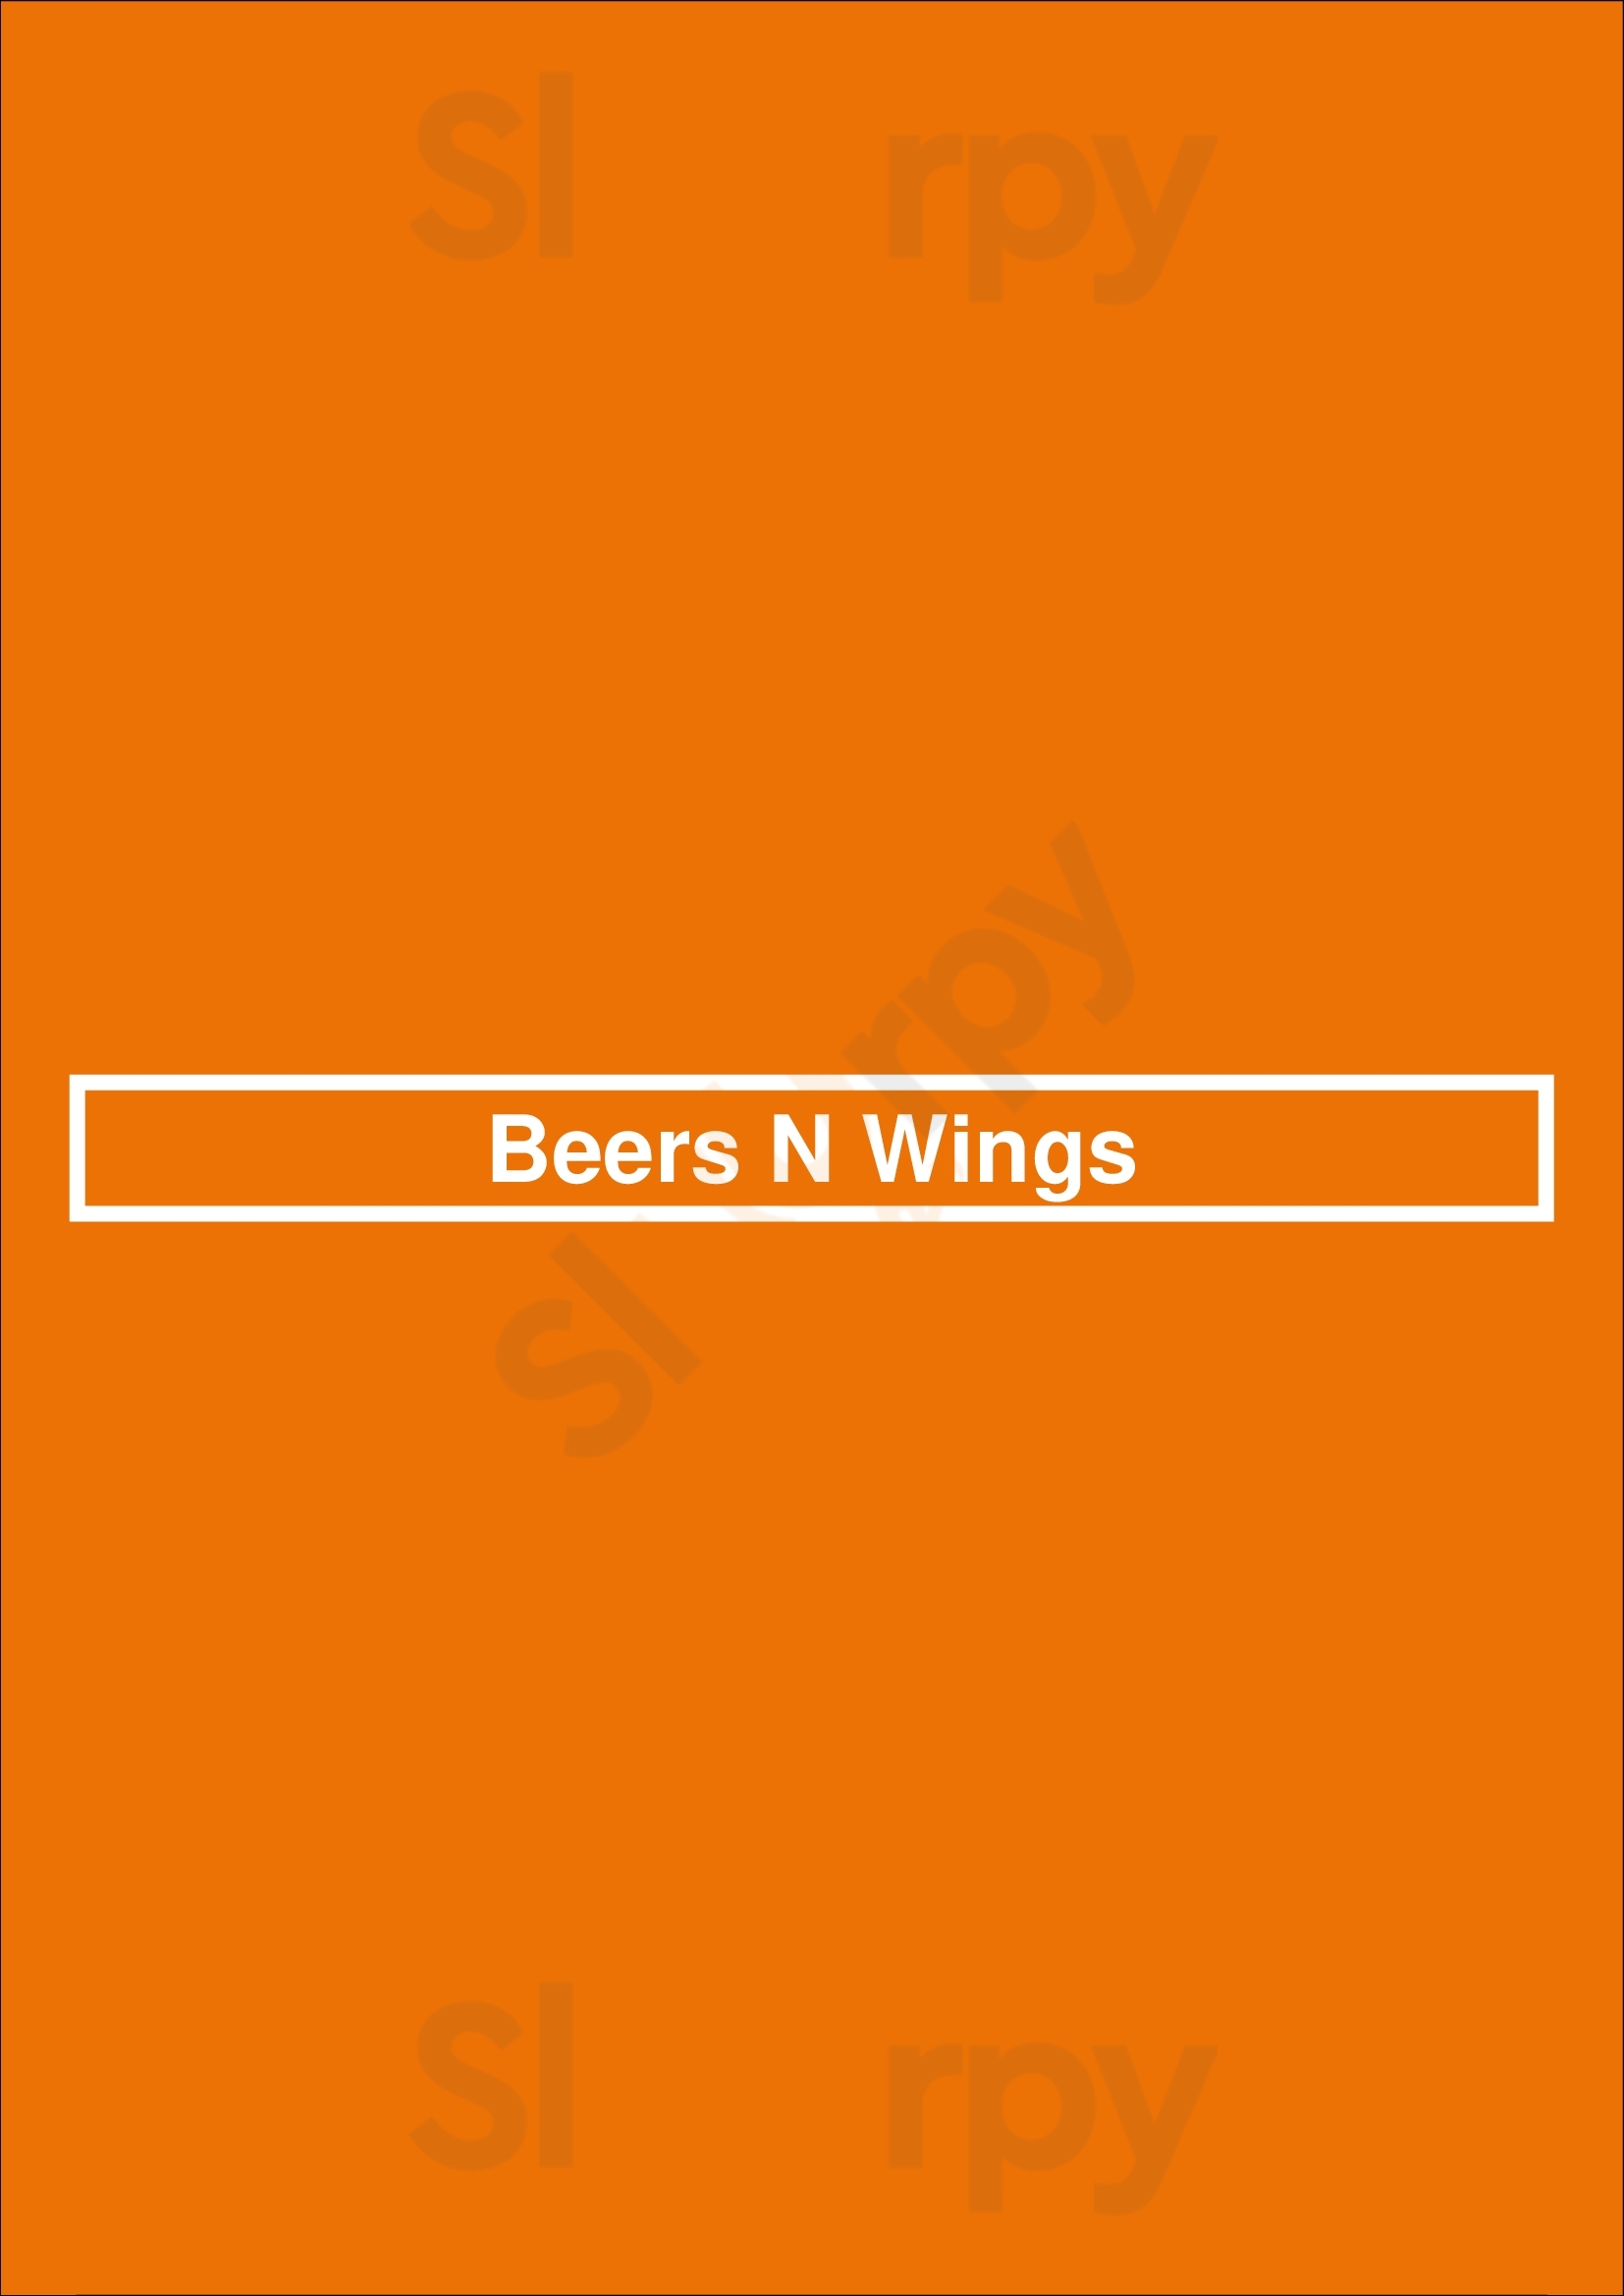 Beers N Wings Los Angeles Menu - 1